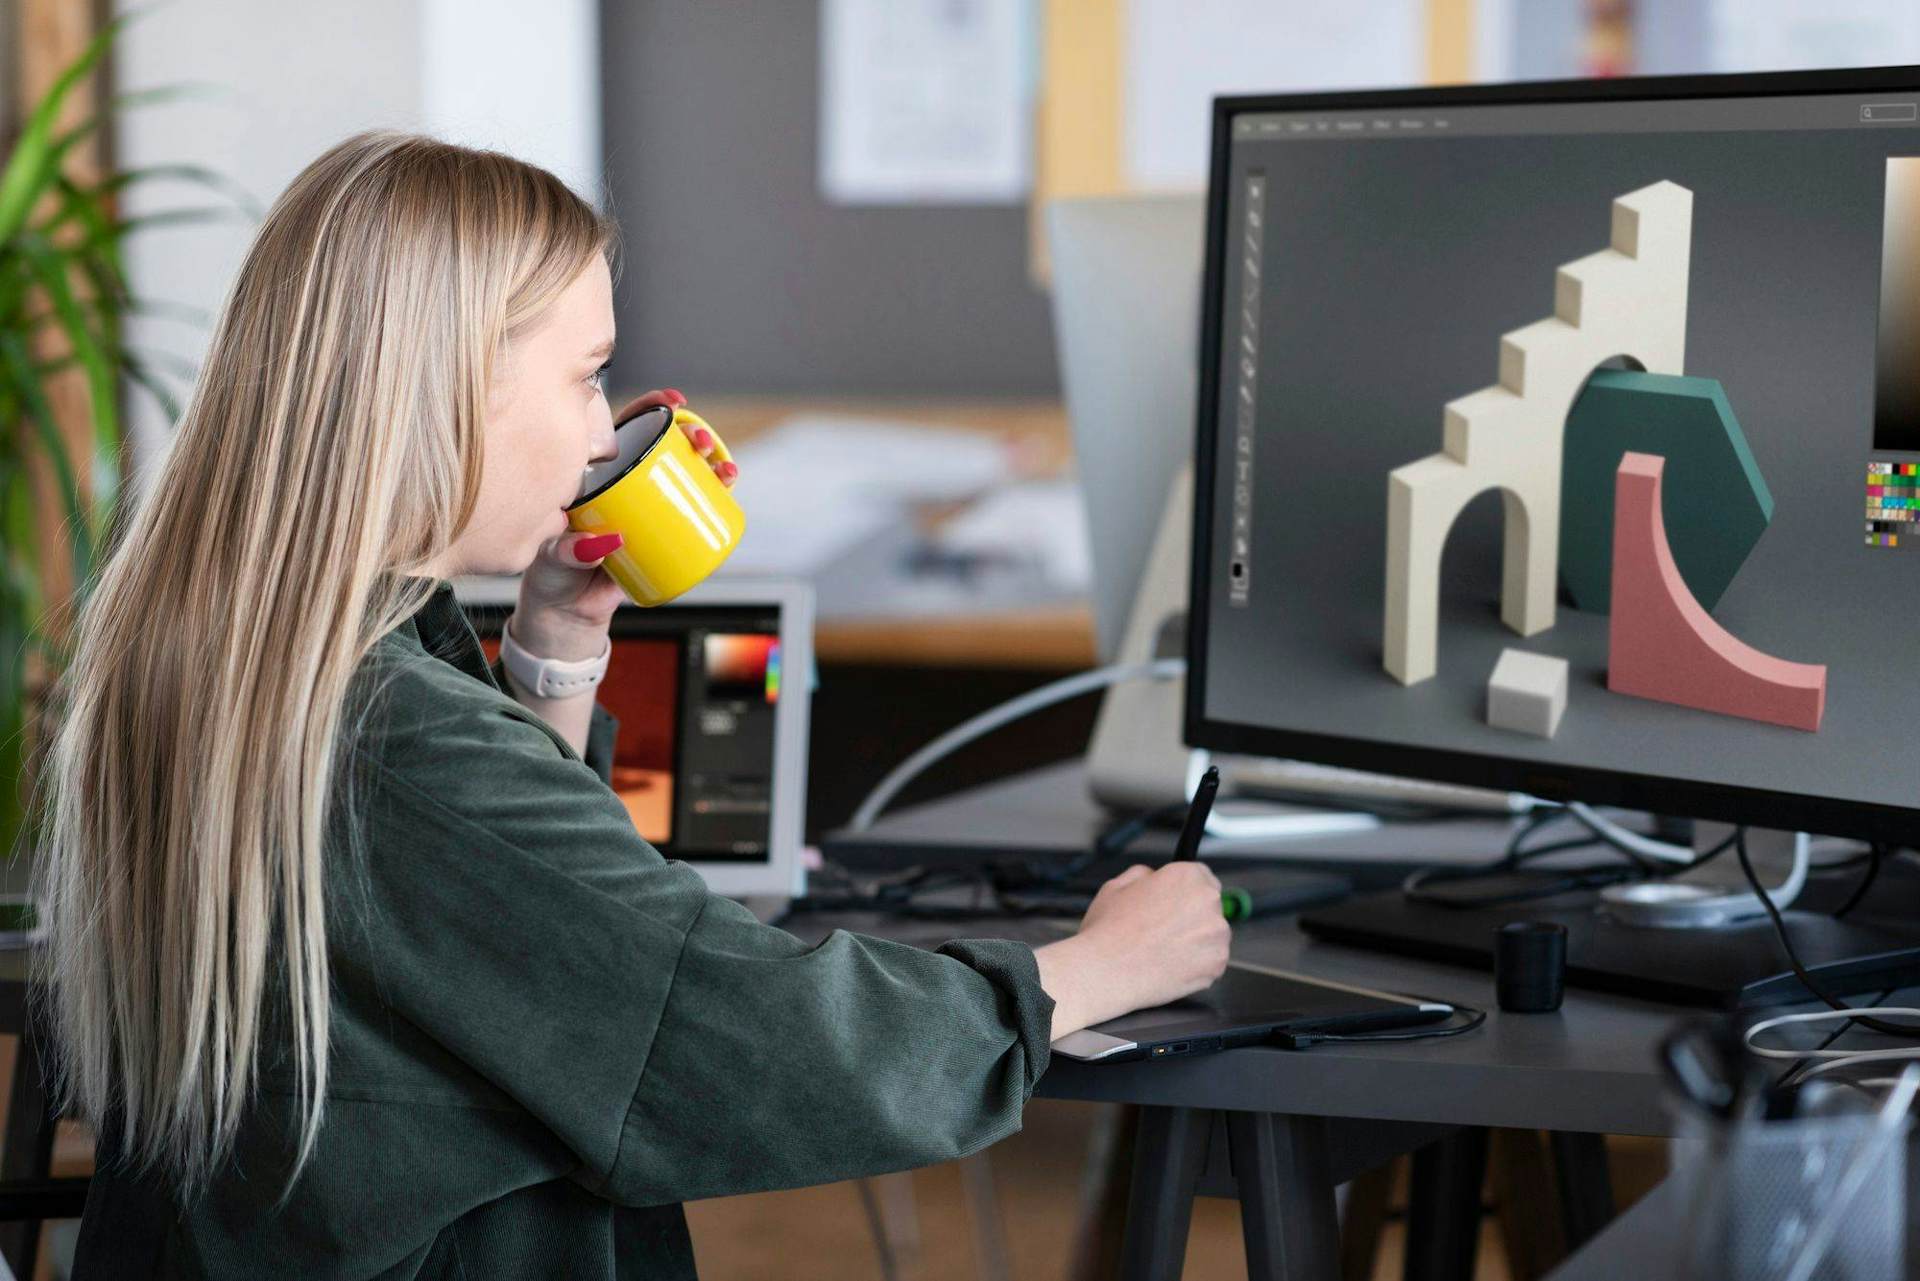 3D Blender tanfolyam / Látványtervező tanfolyam / 3D Modellező tanfolyam / 3D nyomtatás tanfolyam-Egyéb szakmai felnőttképzés